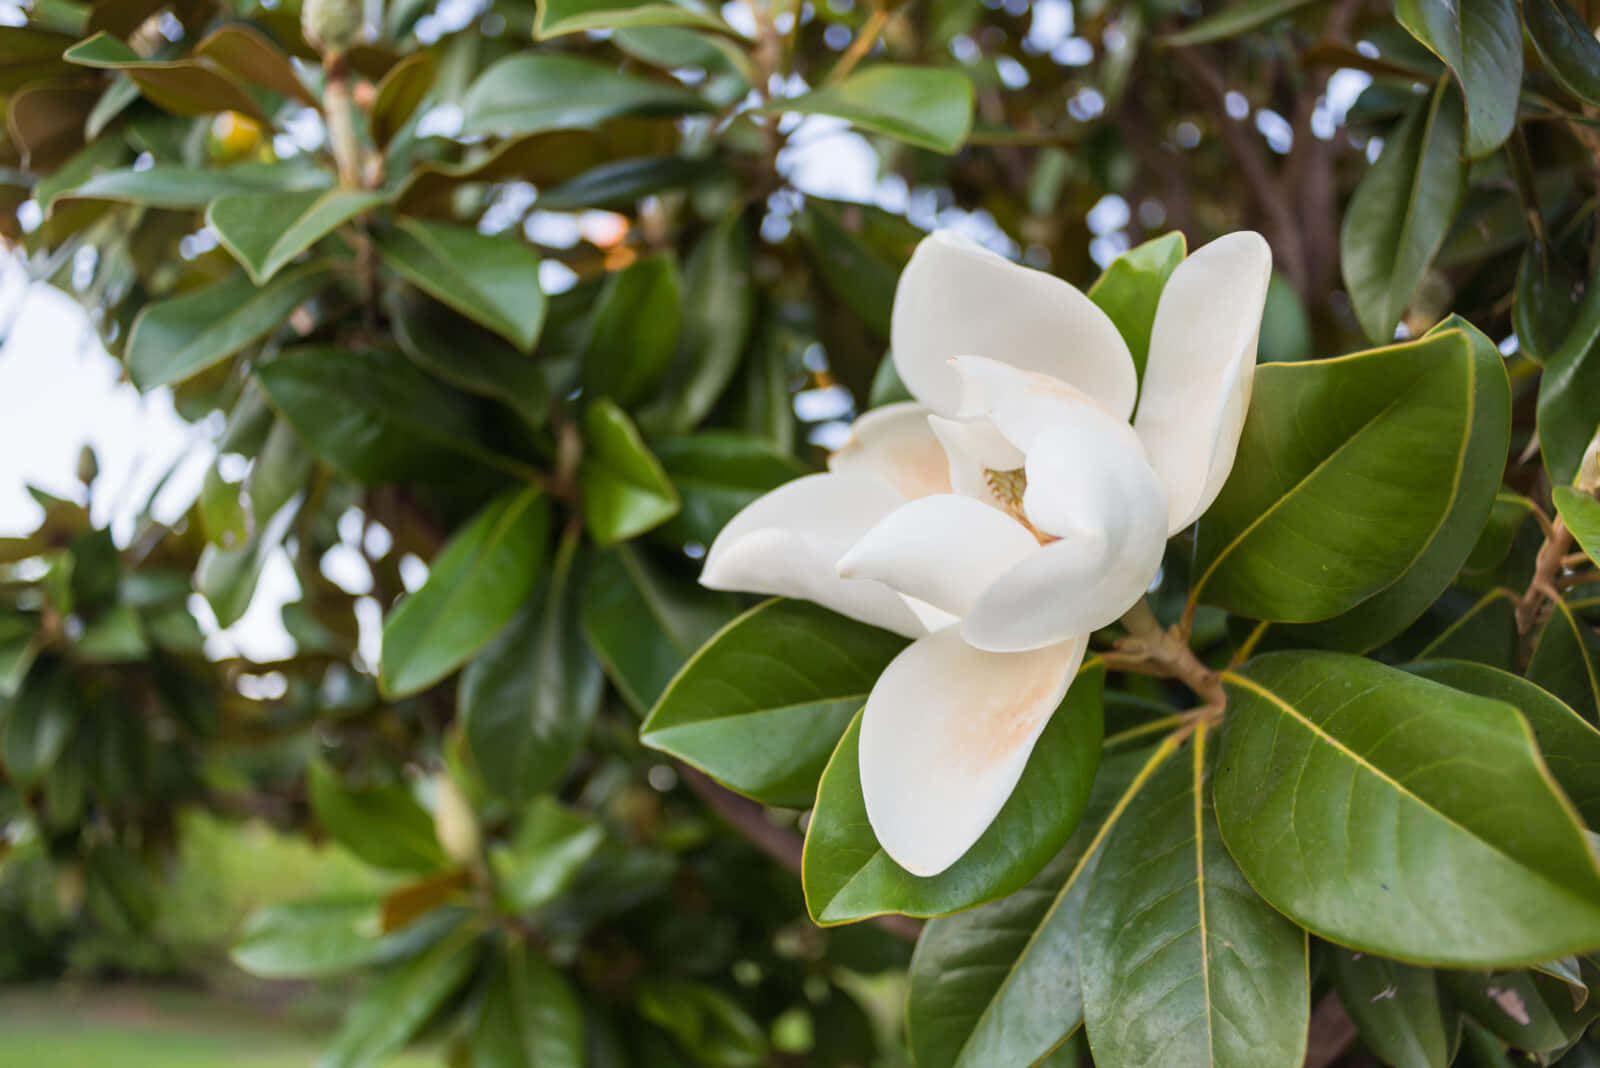 Etsmukt Magnolia-blomst, Der Viser Sine Imponerende Hvide Kronblade.